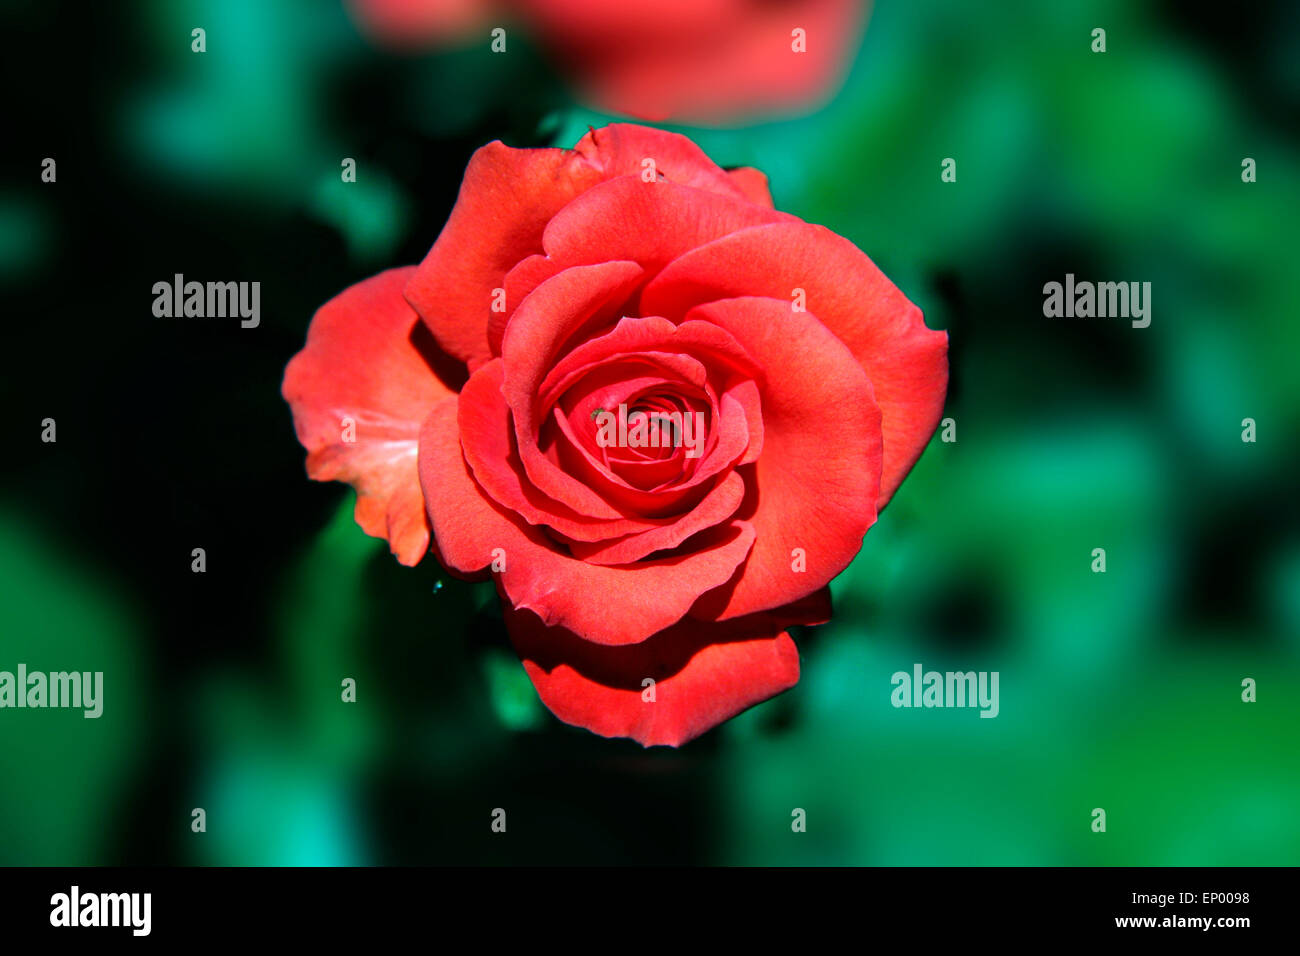 Rote Rose - Symbolbild Liebe/ Valentinstag/ rose rouge - image symbolique de l'amour, afection et Jour de Valentines. Banque D'Images